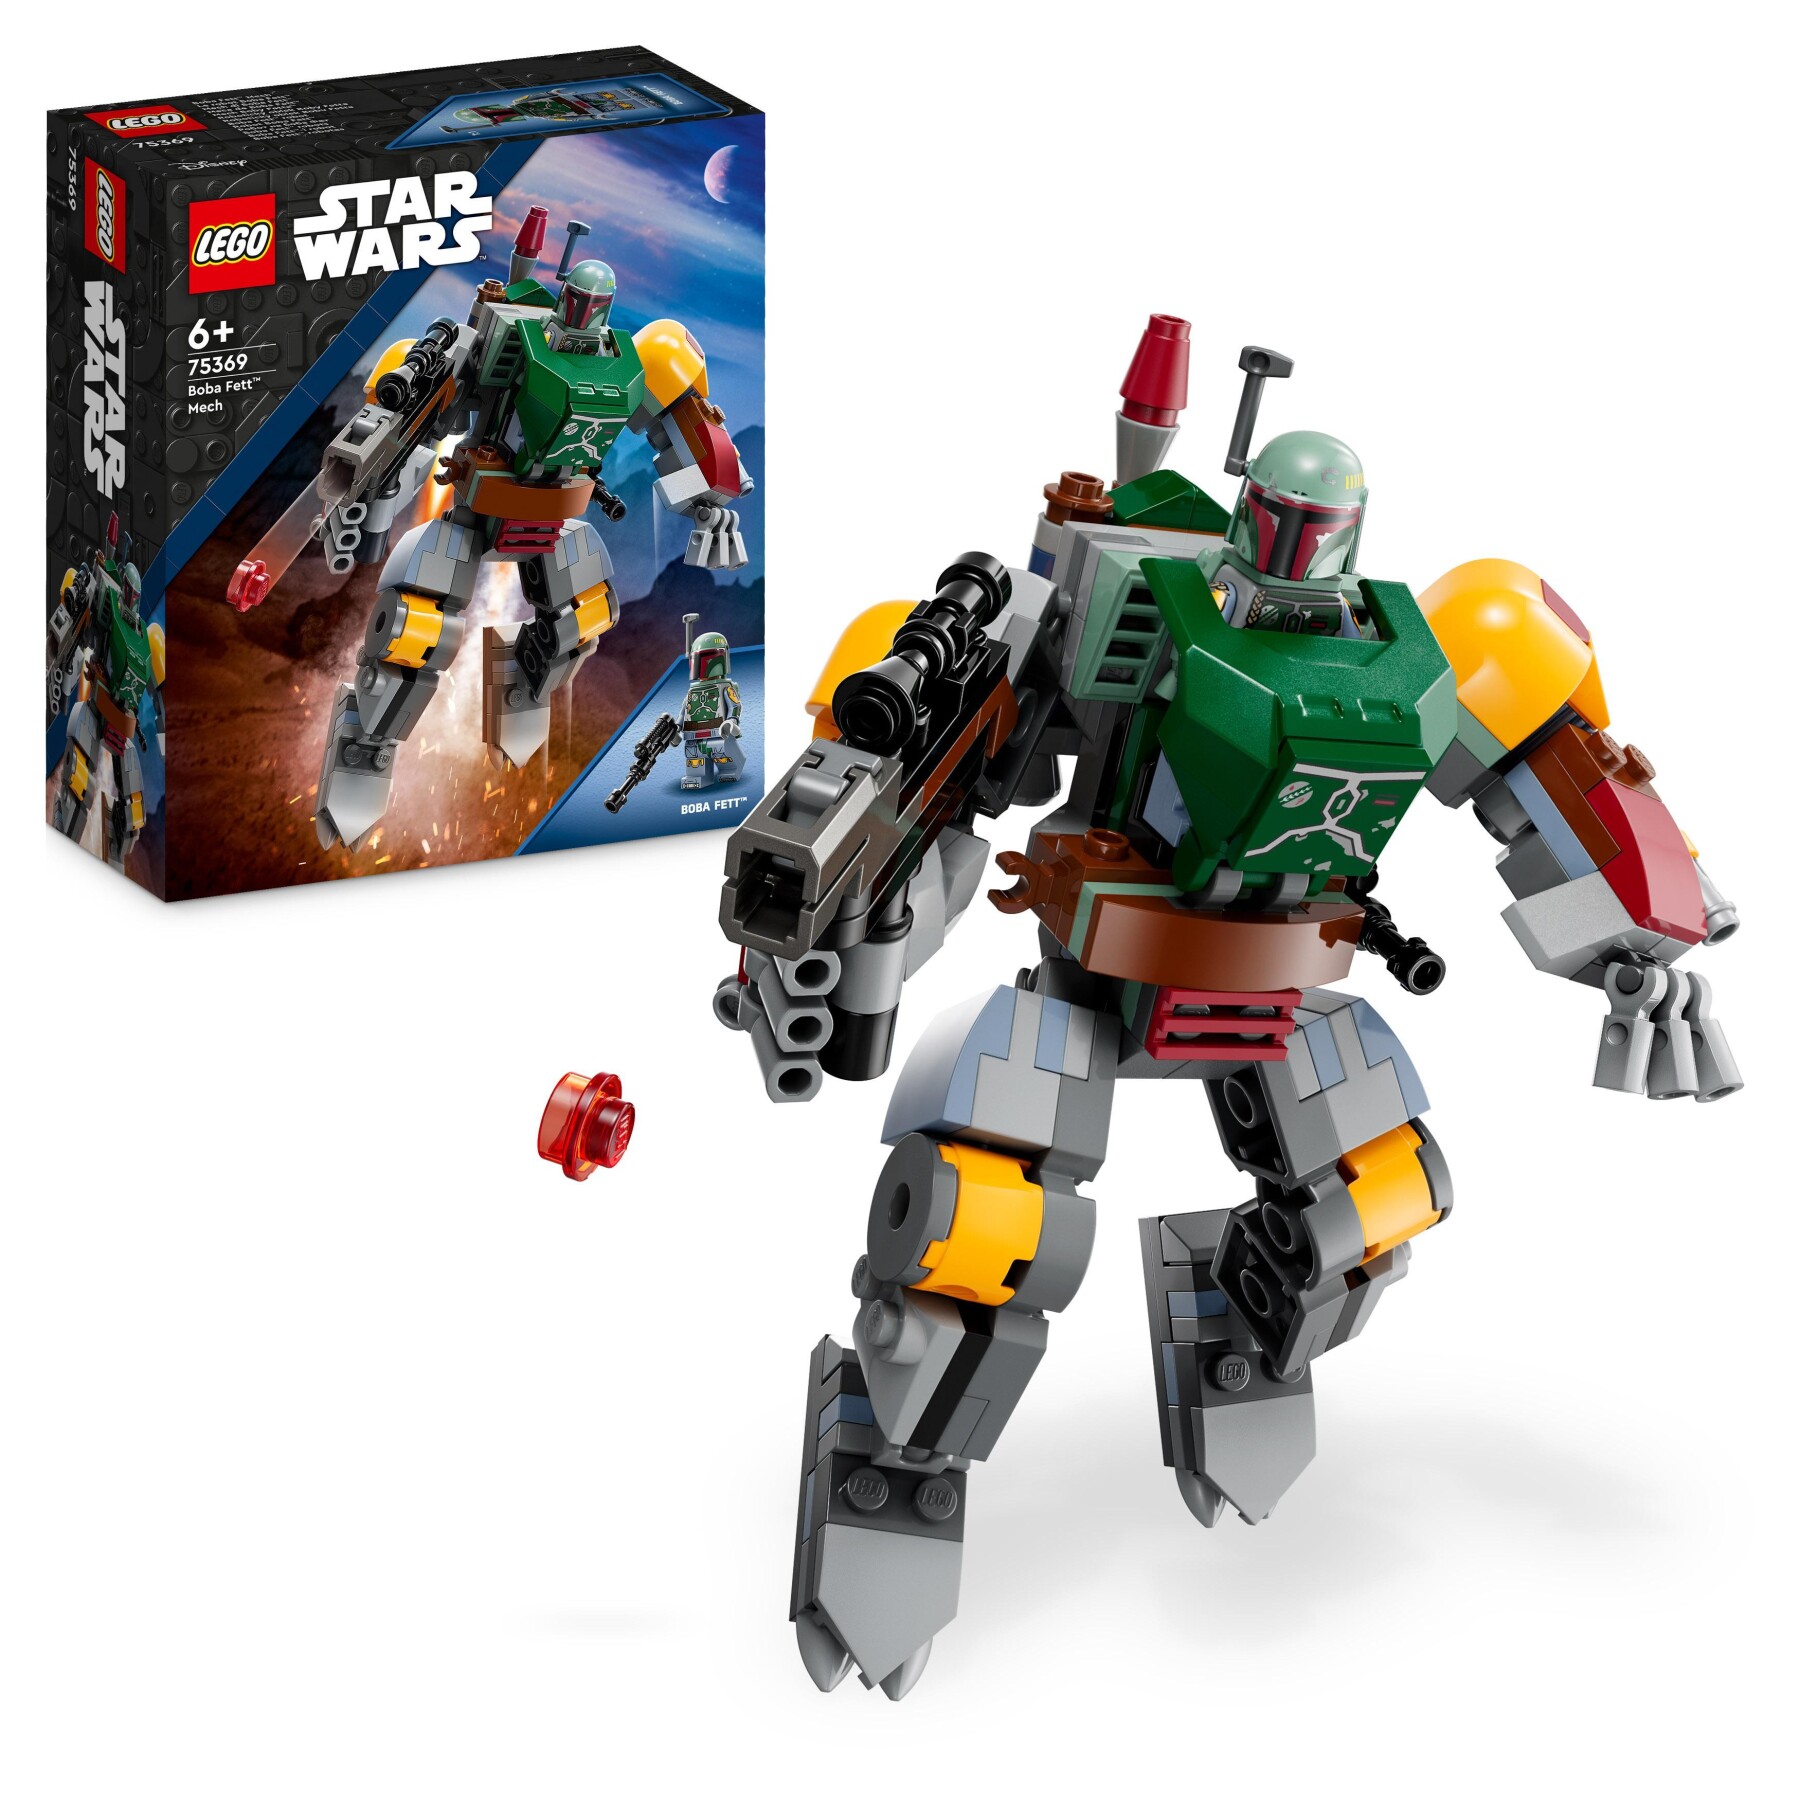 Lego star wars 75369 mech di boba fett, set action figure con blaster e jetpack, giochi da collezione per bambini 6+ anni - LEGO STAR WARS, Star Wars